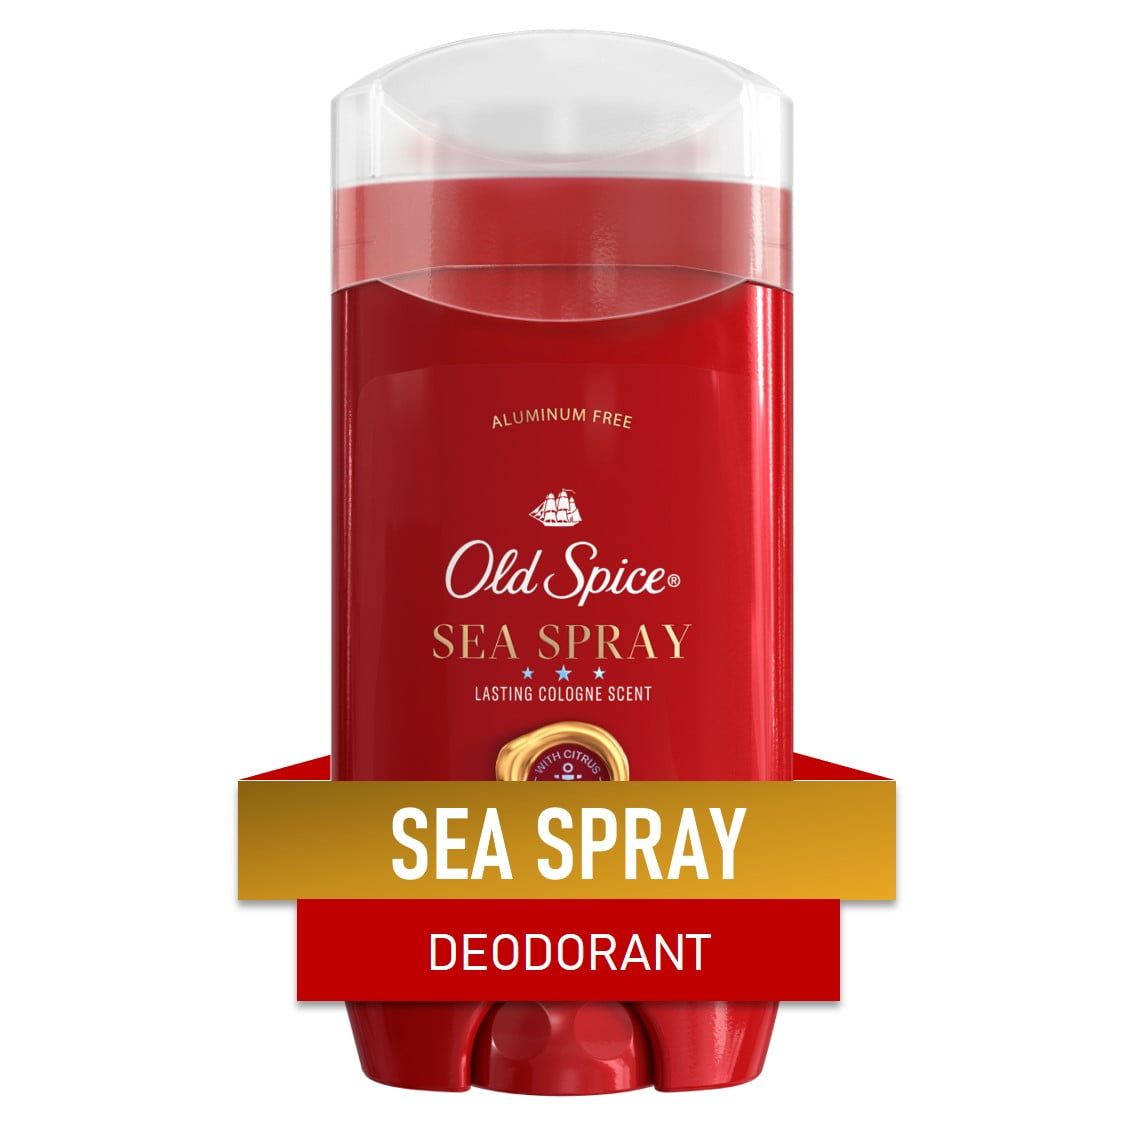 Old Spice Men's Deodorant Aluminum Free Sea Spray Lasting Cologne Scent, 3.0oz